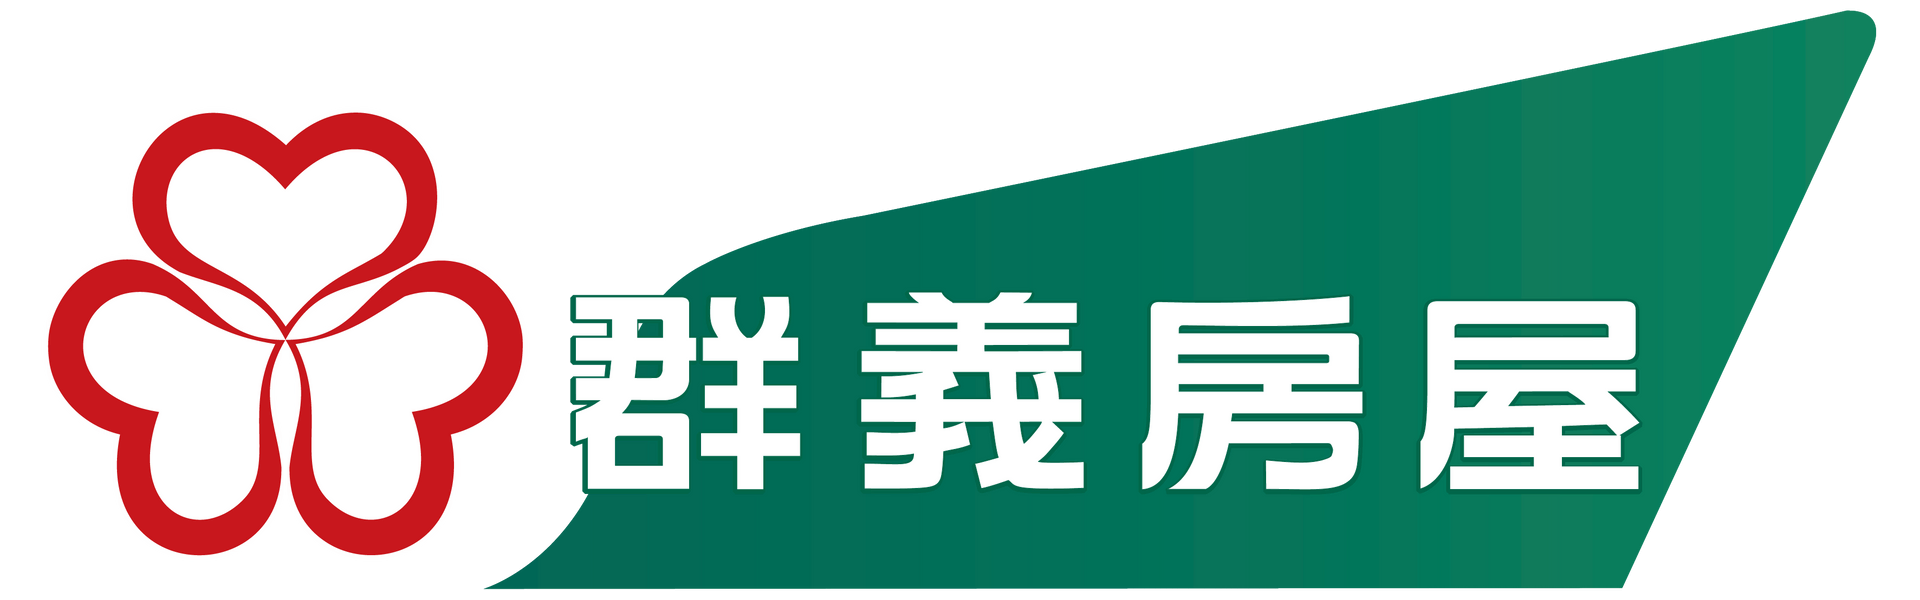 群義房屋高鐵站前店Logo